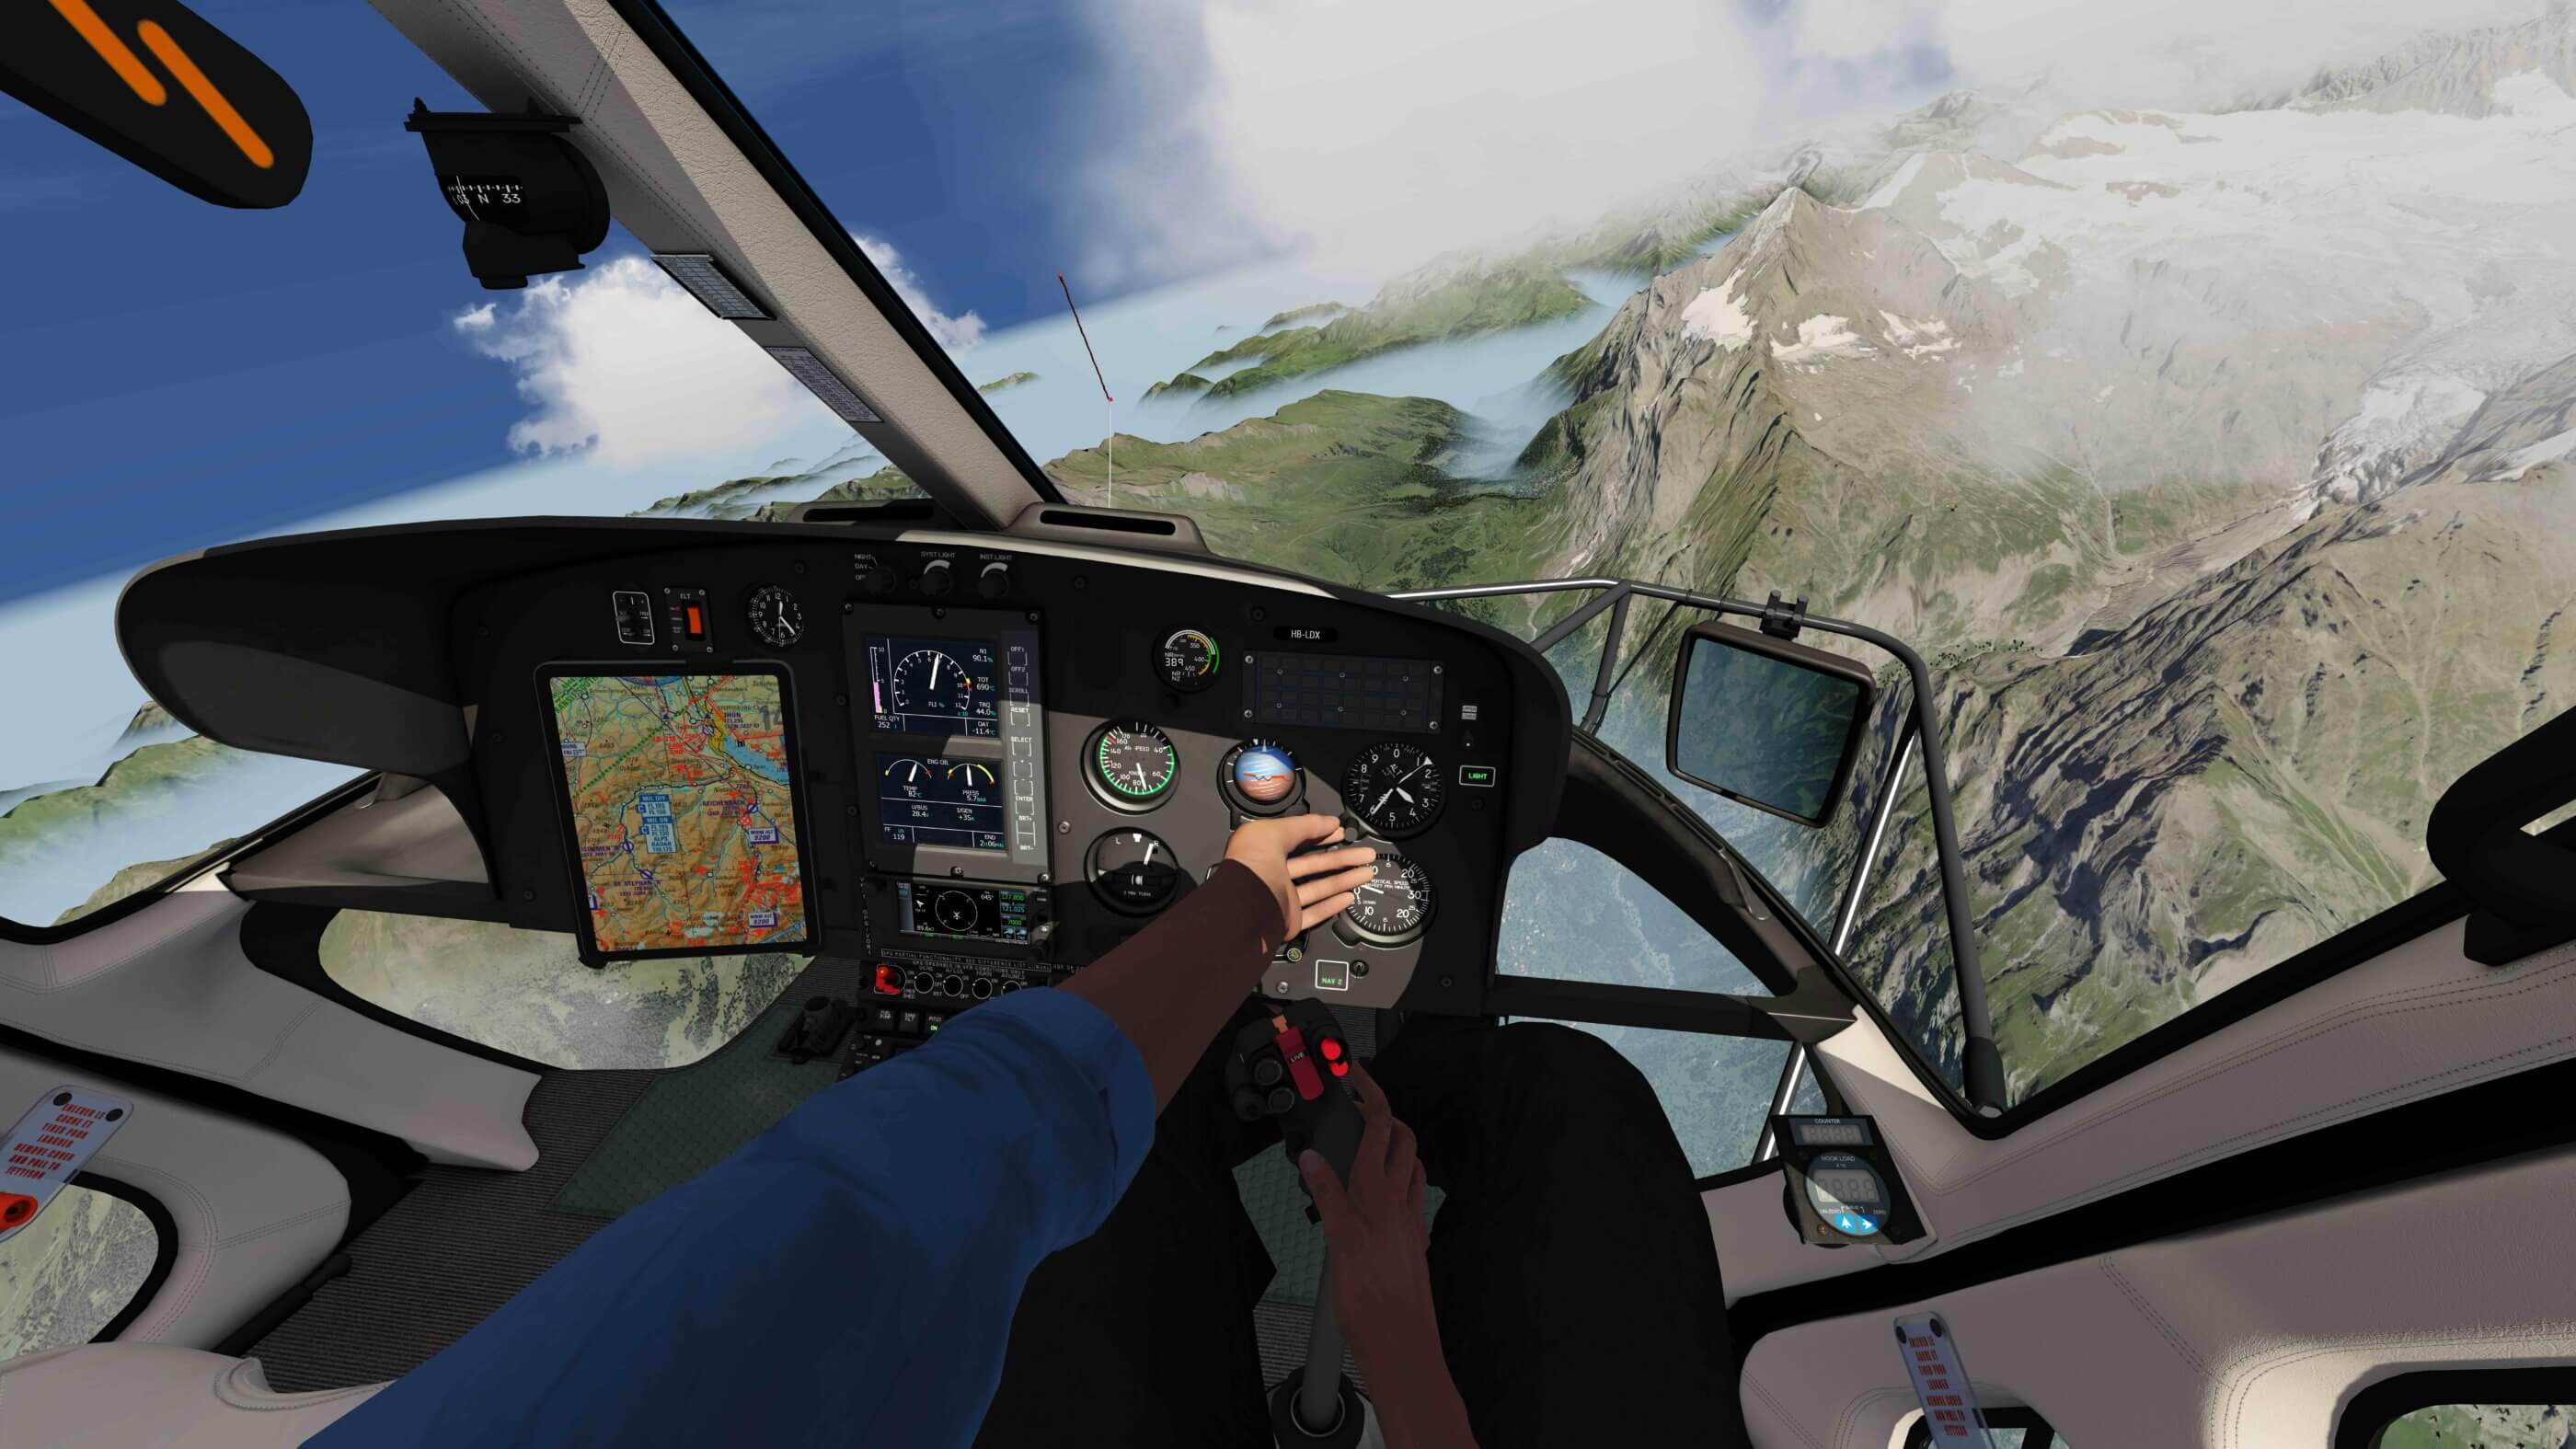 First H145 Full Flight Simulator in North America inaugurated in